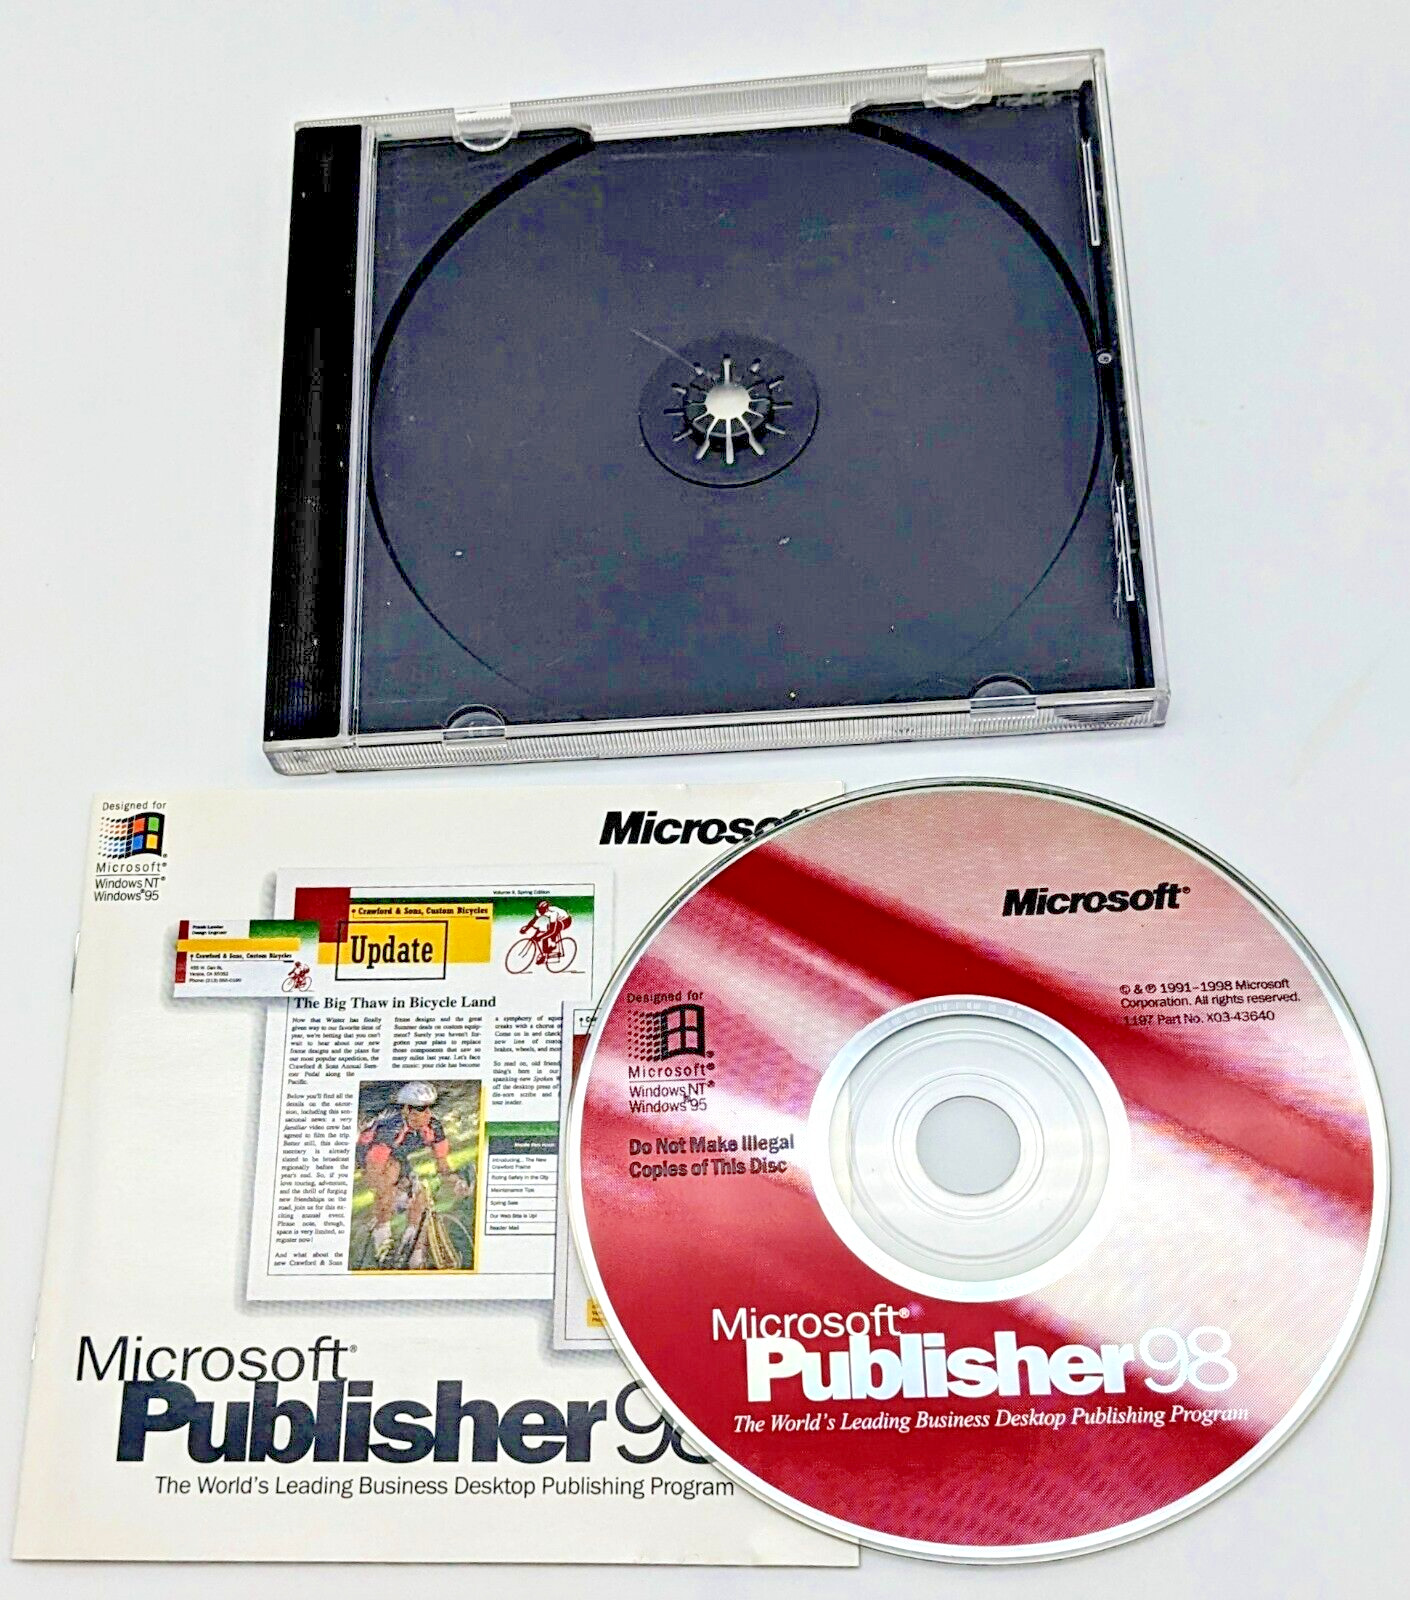 Microsoft Publisher 98 - CD Key Included - PC Windows Publishing Program